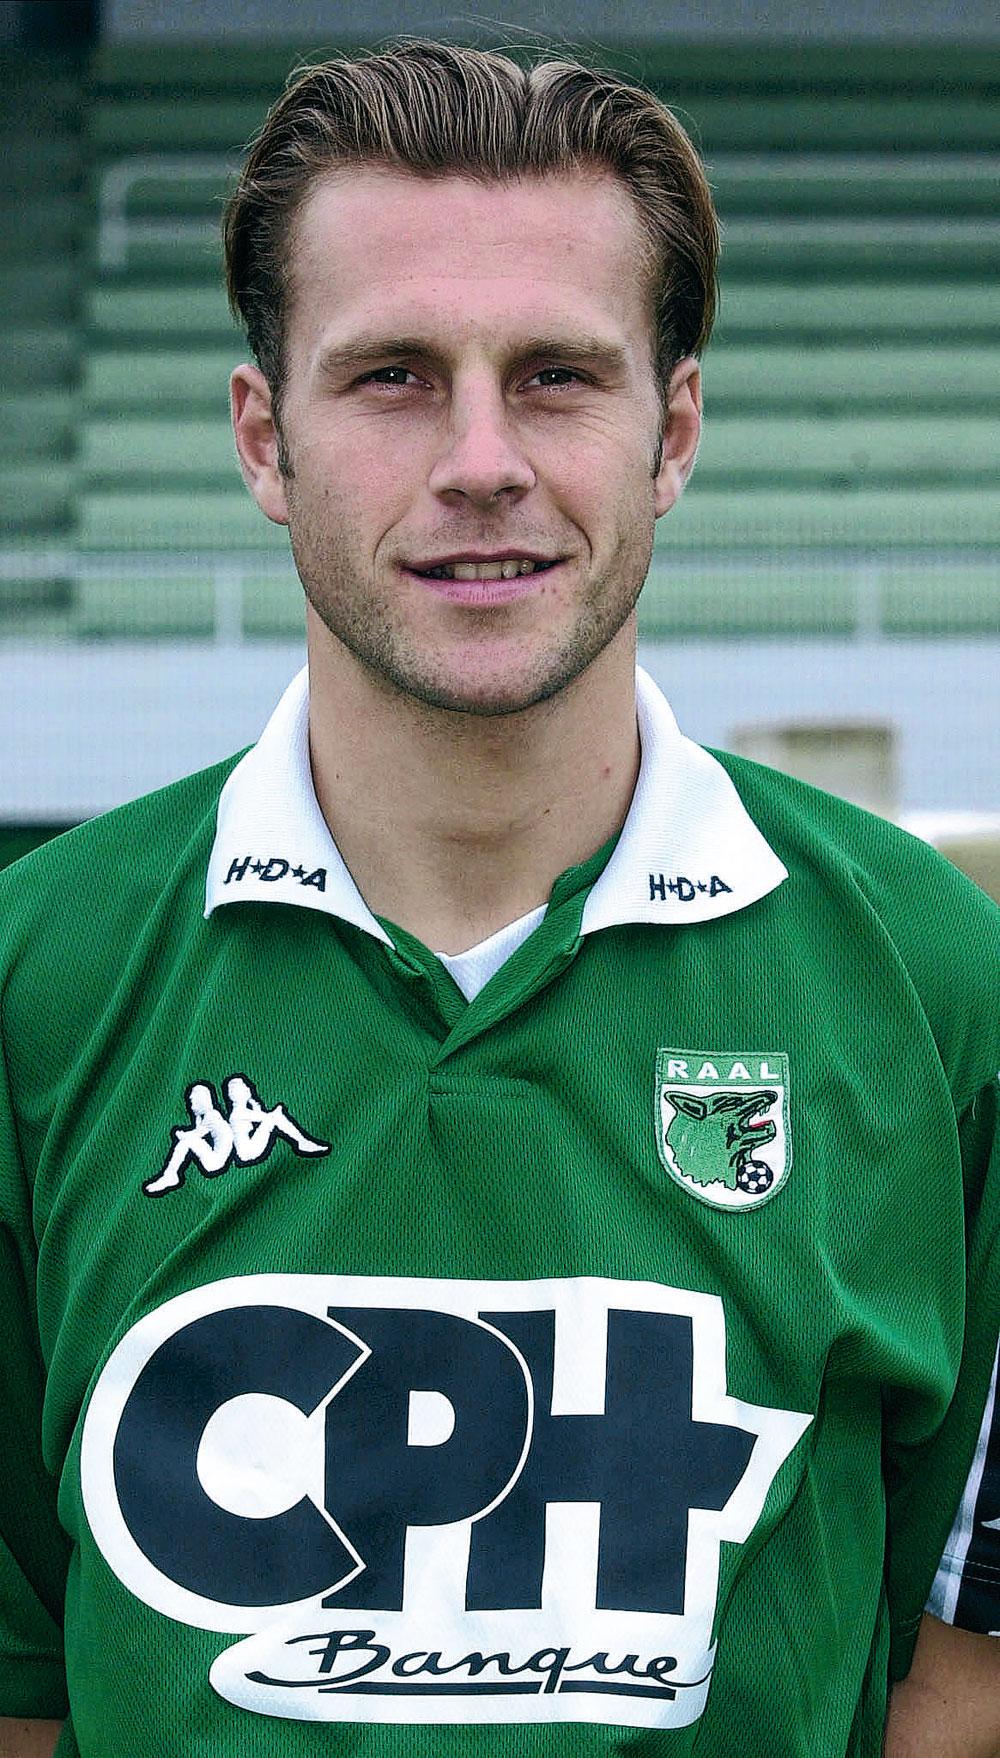 Fabien Delbeeke, football player